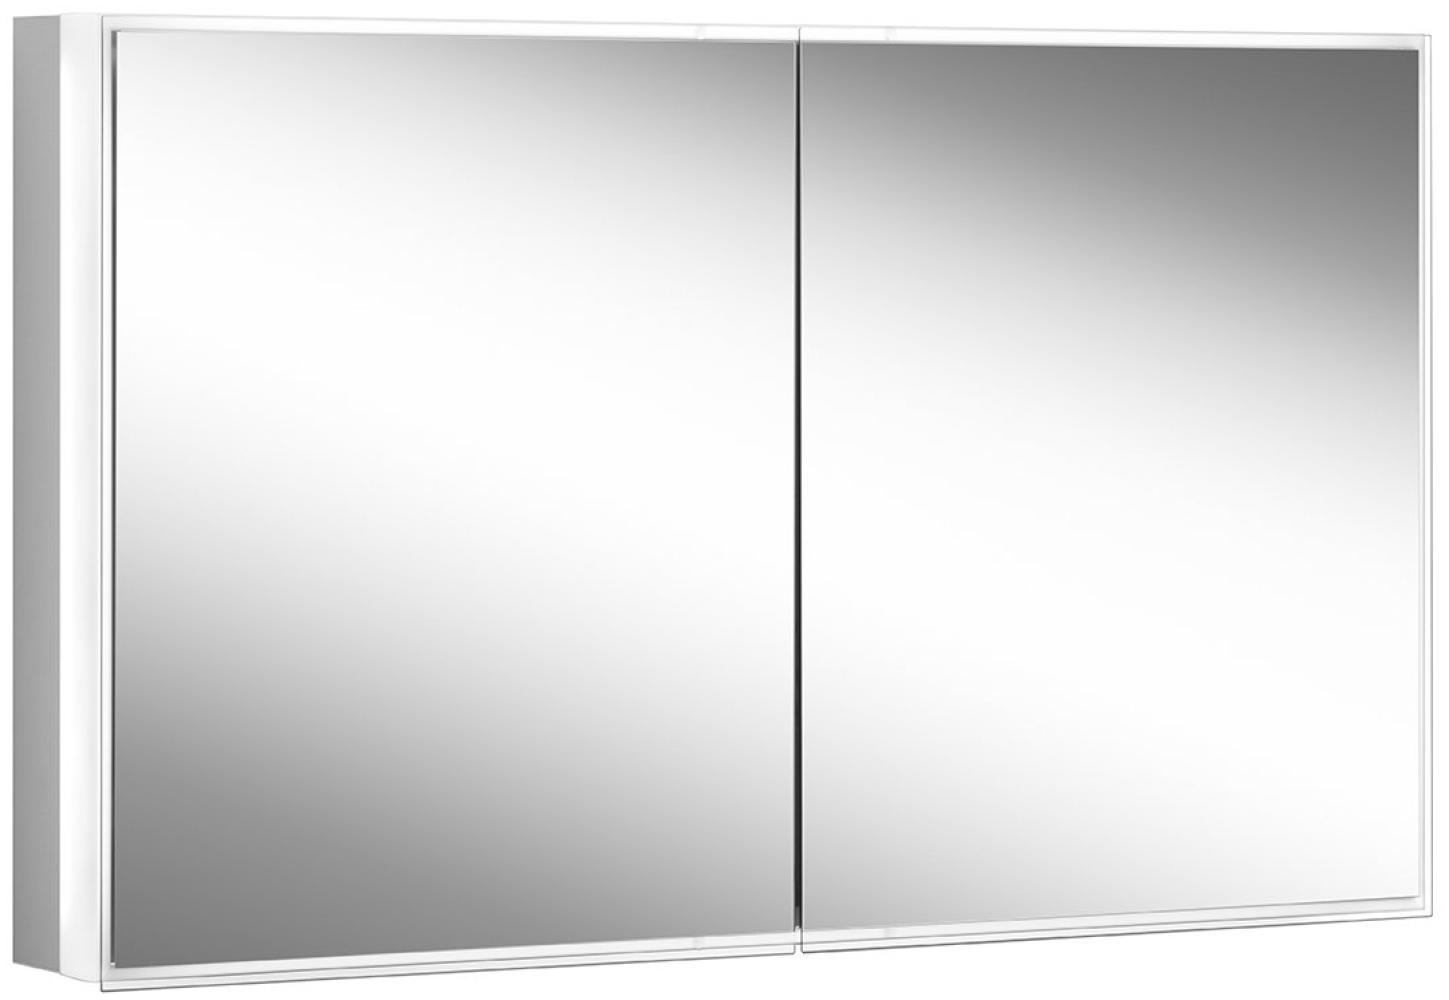 Schneider PREMIUM Line Superior LED Lichtspiegelschrank, 2 Doppelspiegeltüren, 1025x73,6x16,7cm, 181. 100, Ausführung: EU-Norm/Korpus silber eloxiert - 181. 100. 02. 50 Bild 1